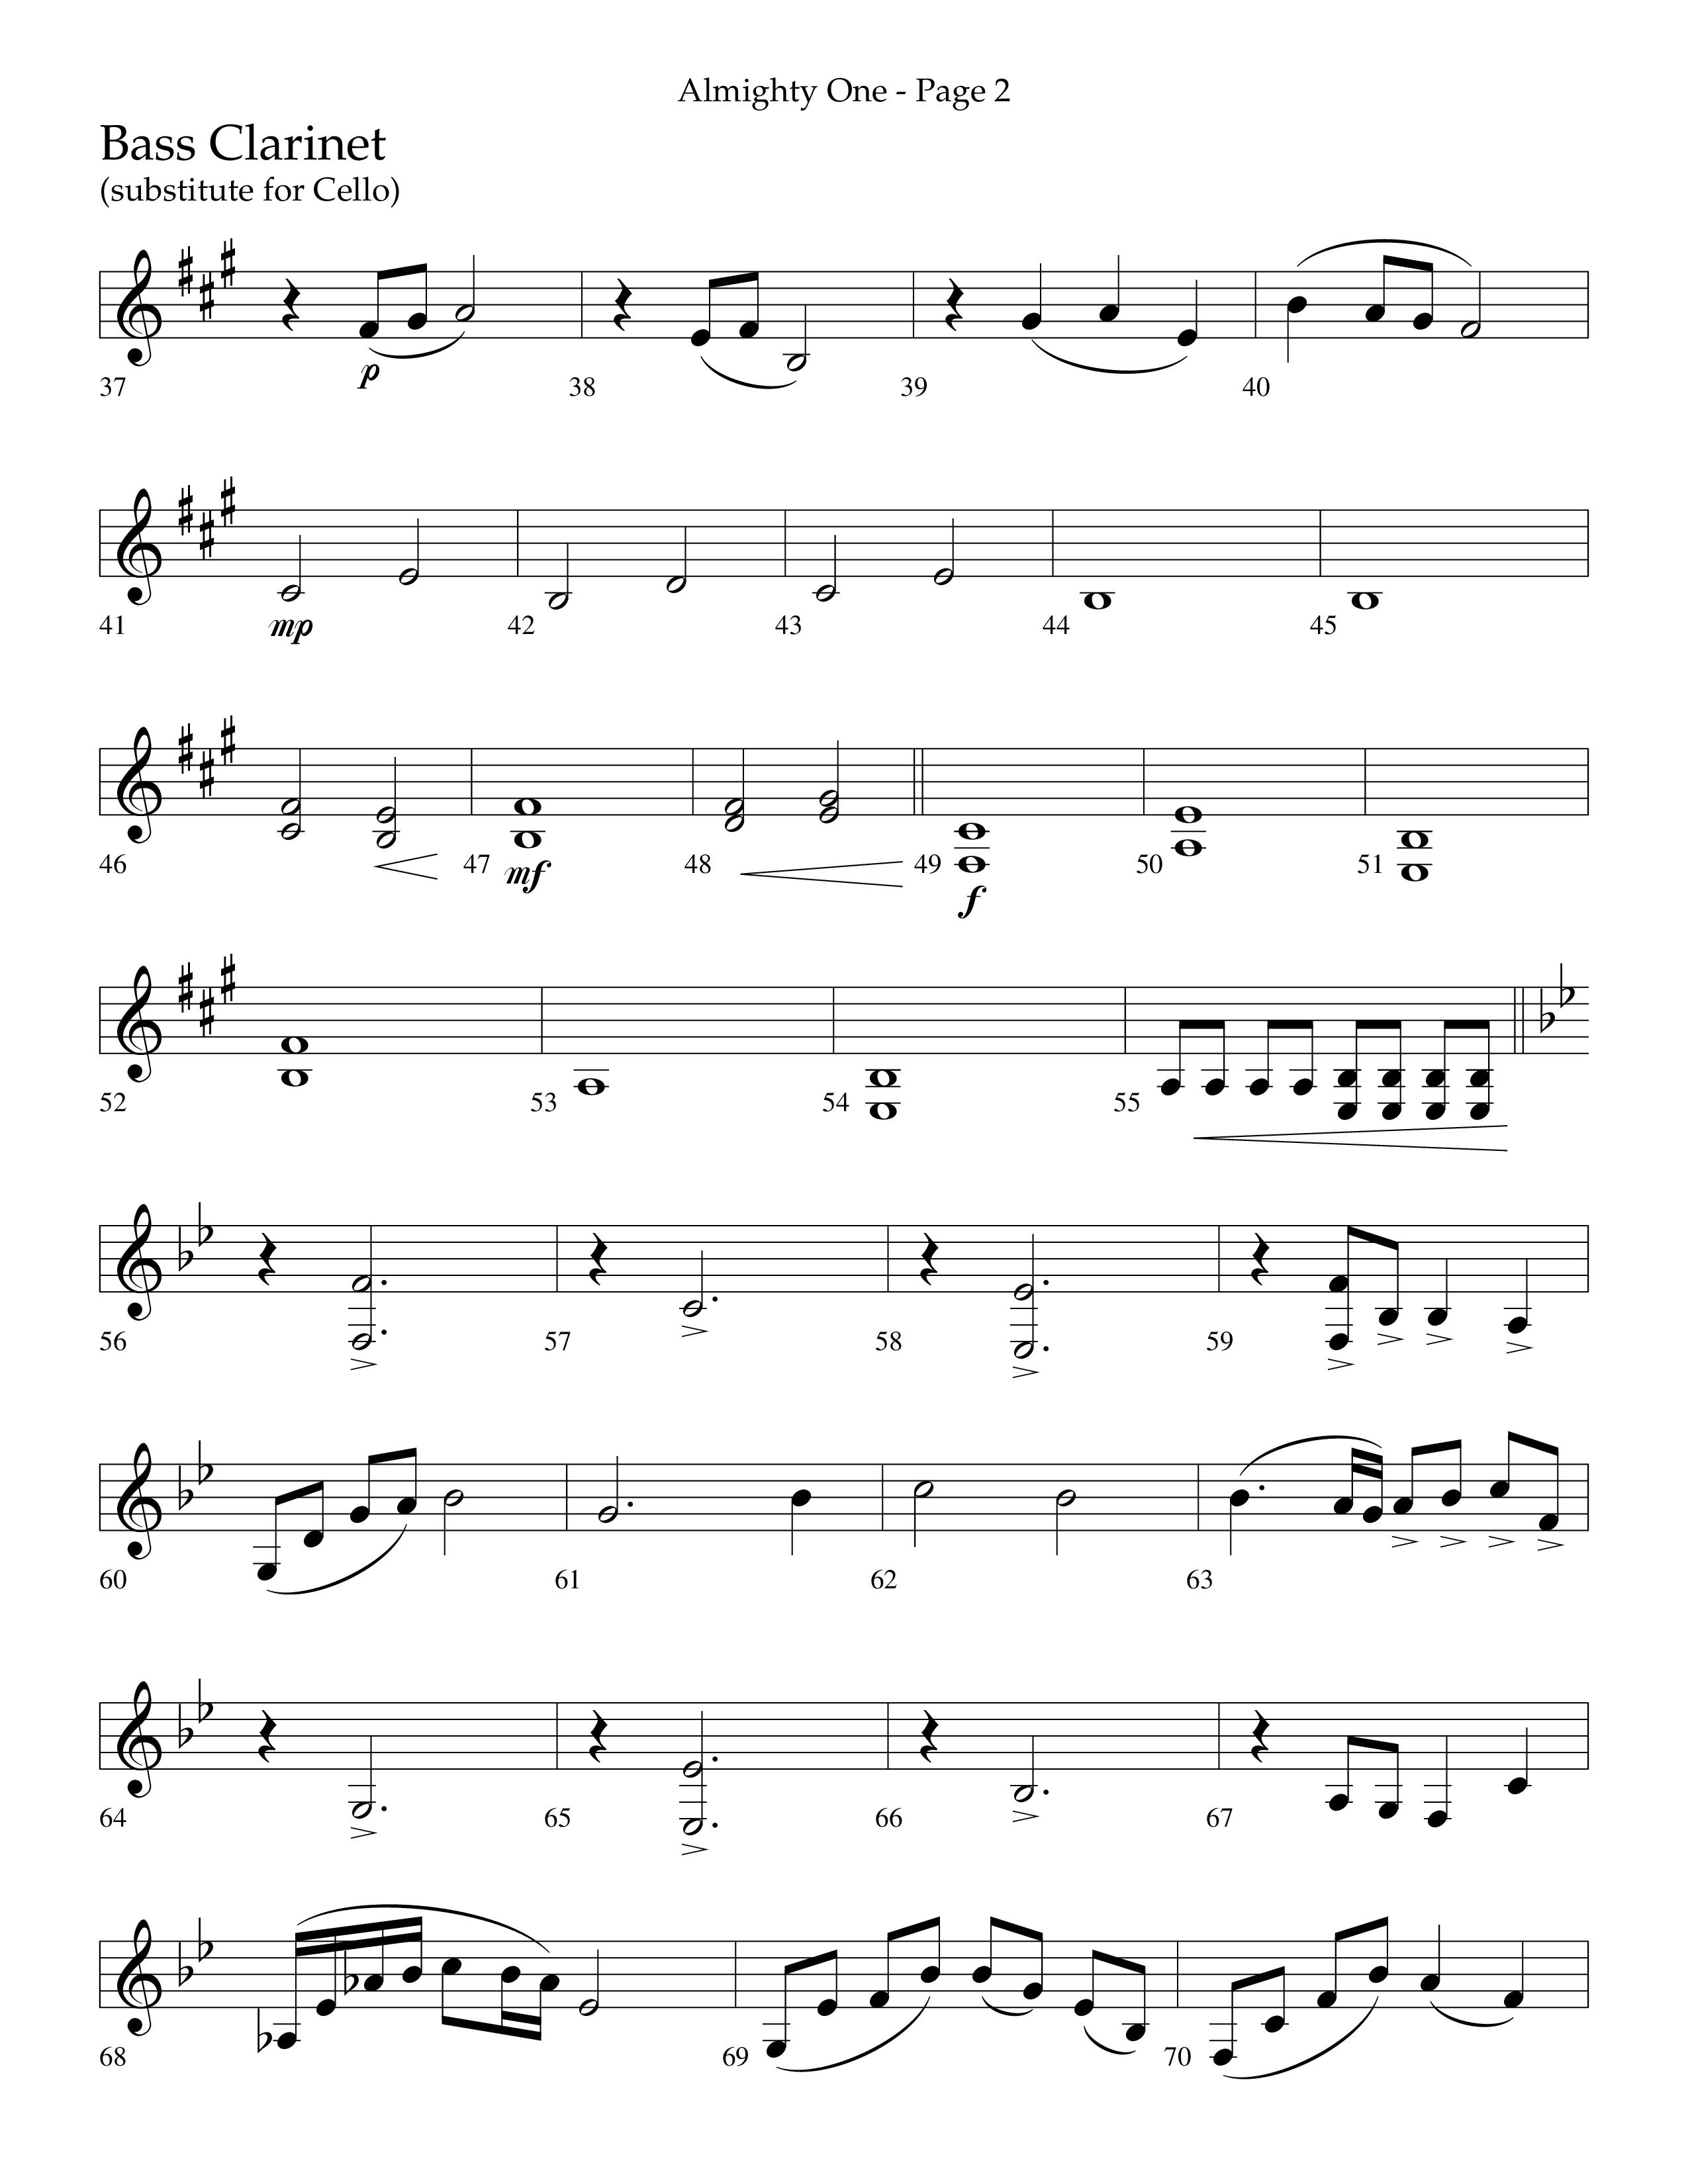 Almighty One (Choral Anthem SATB) Bass Clarinet (Lifeway Choral / Arr. Bradley Knight)